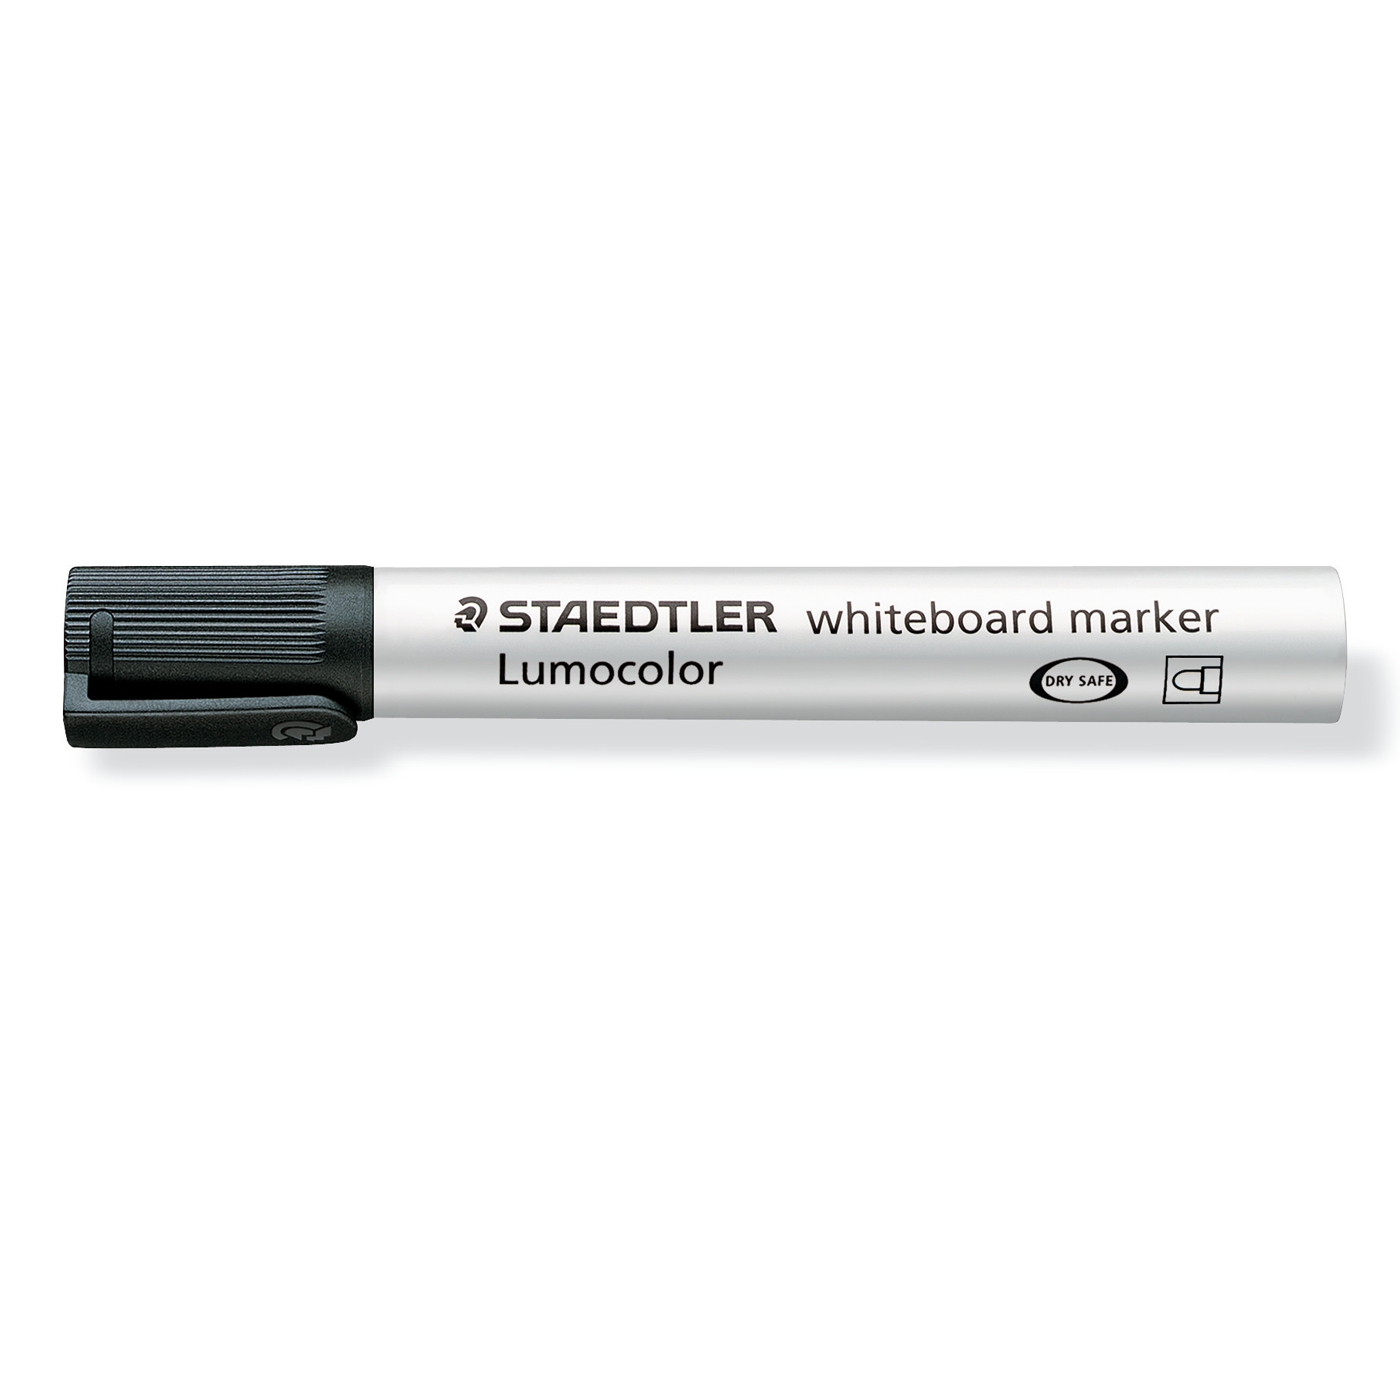 Staedtler Whiteboard Marker Lumocolor Bullet Tip Black